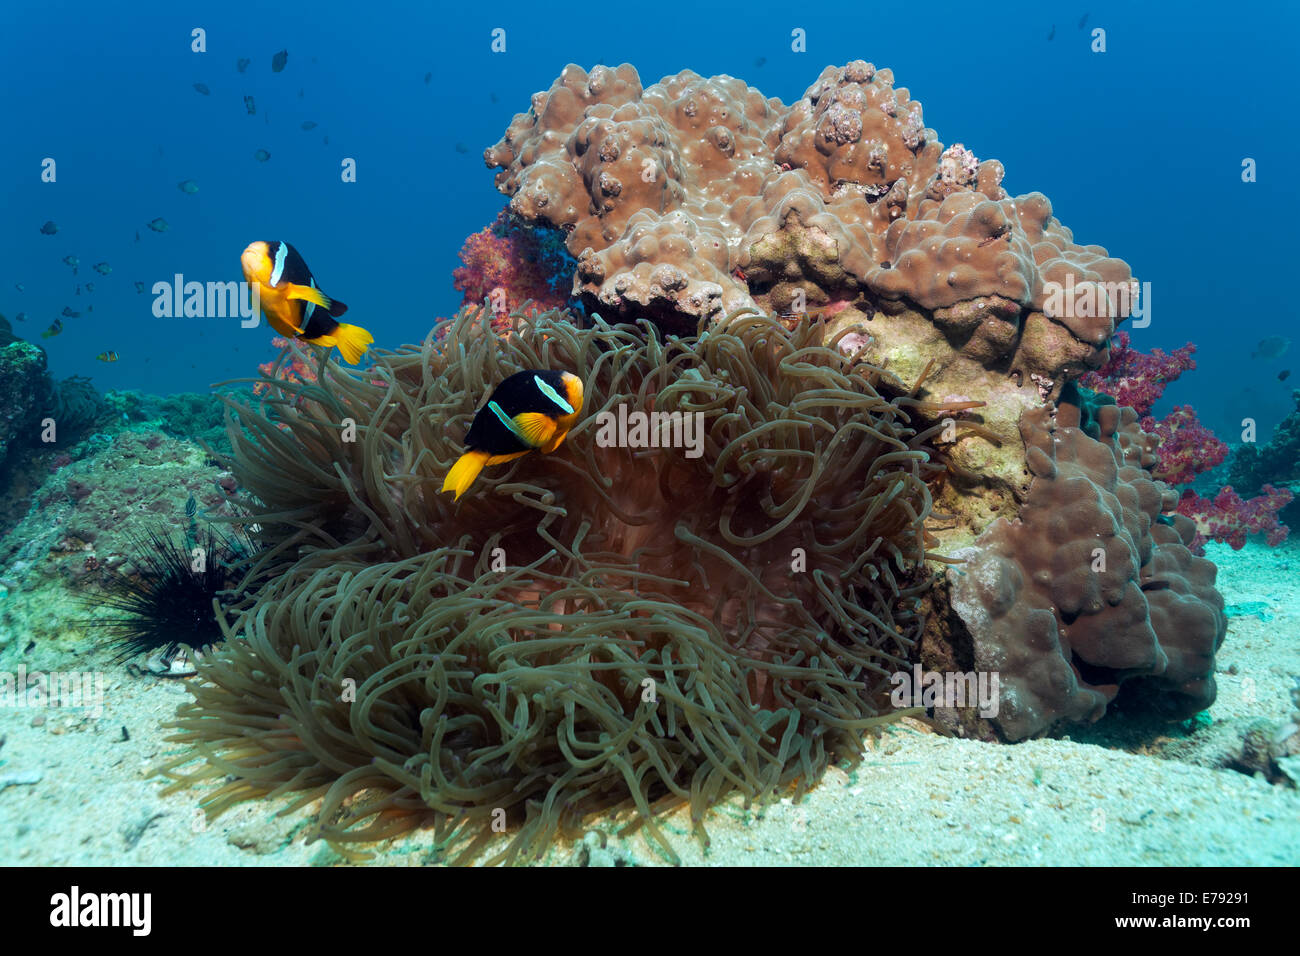 Poisson clown de Clark (Amphiprion clarkii) à une barrière de corail avec une anémone Heteractis crispa (Sebae) Banque D'Images